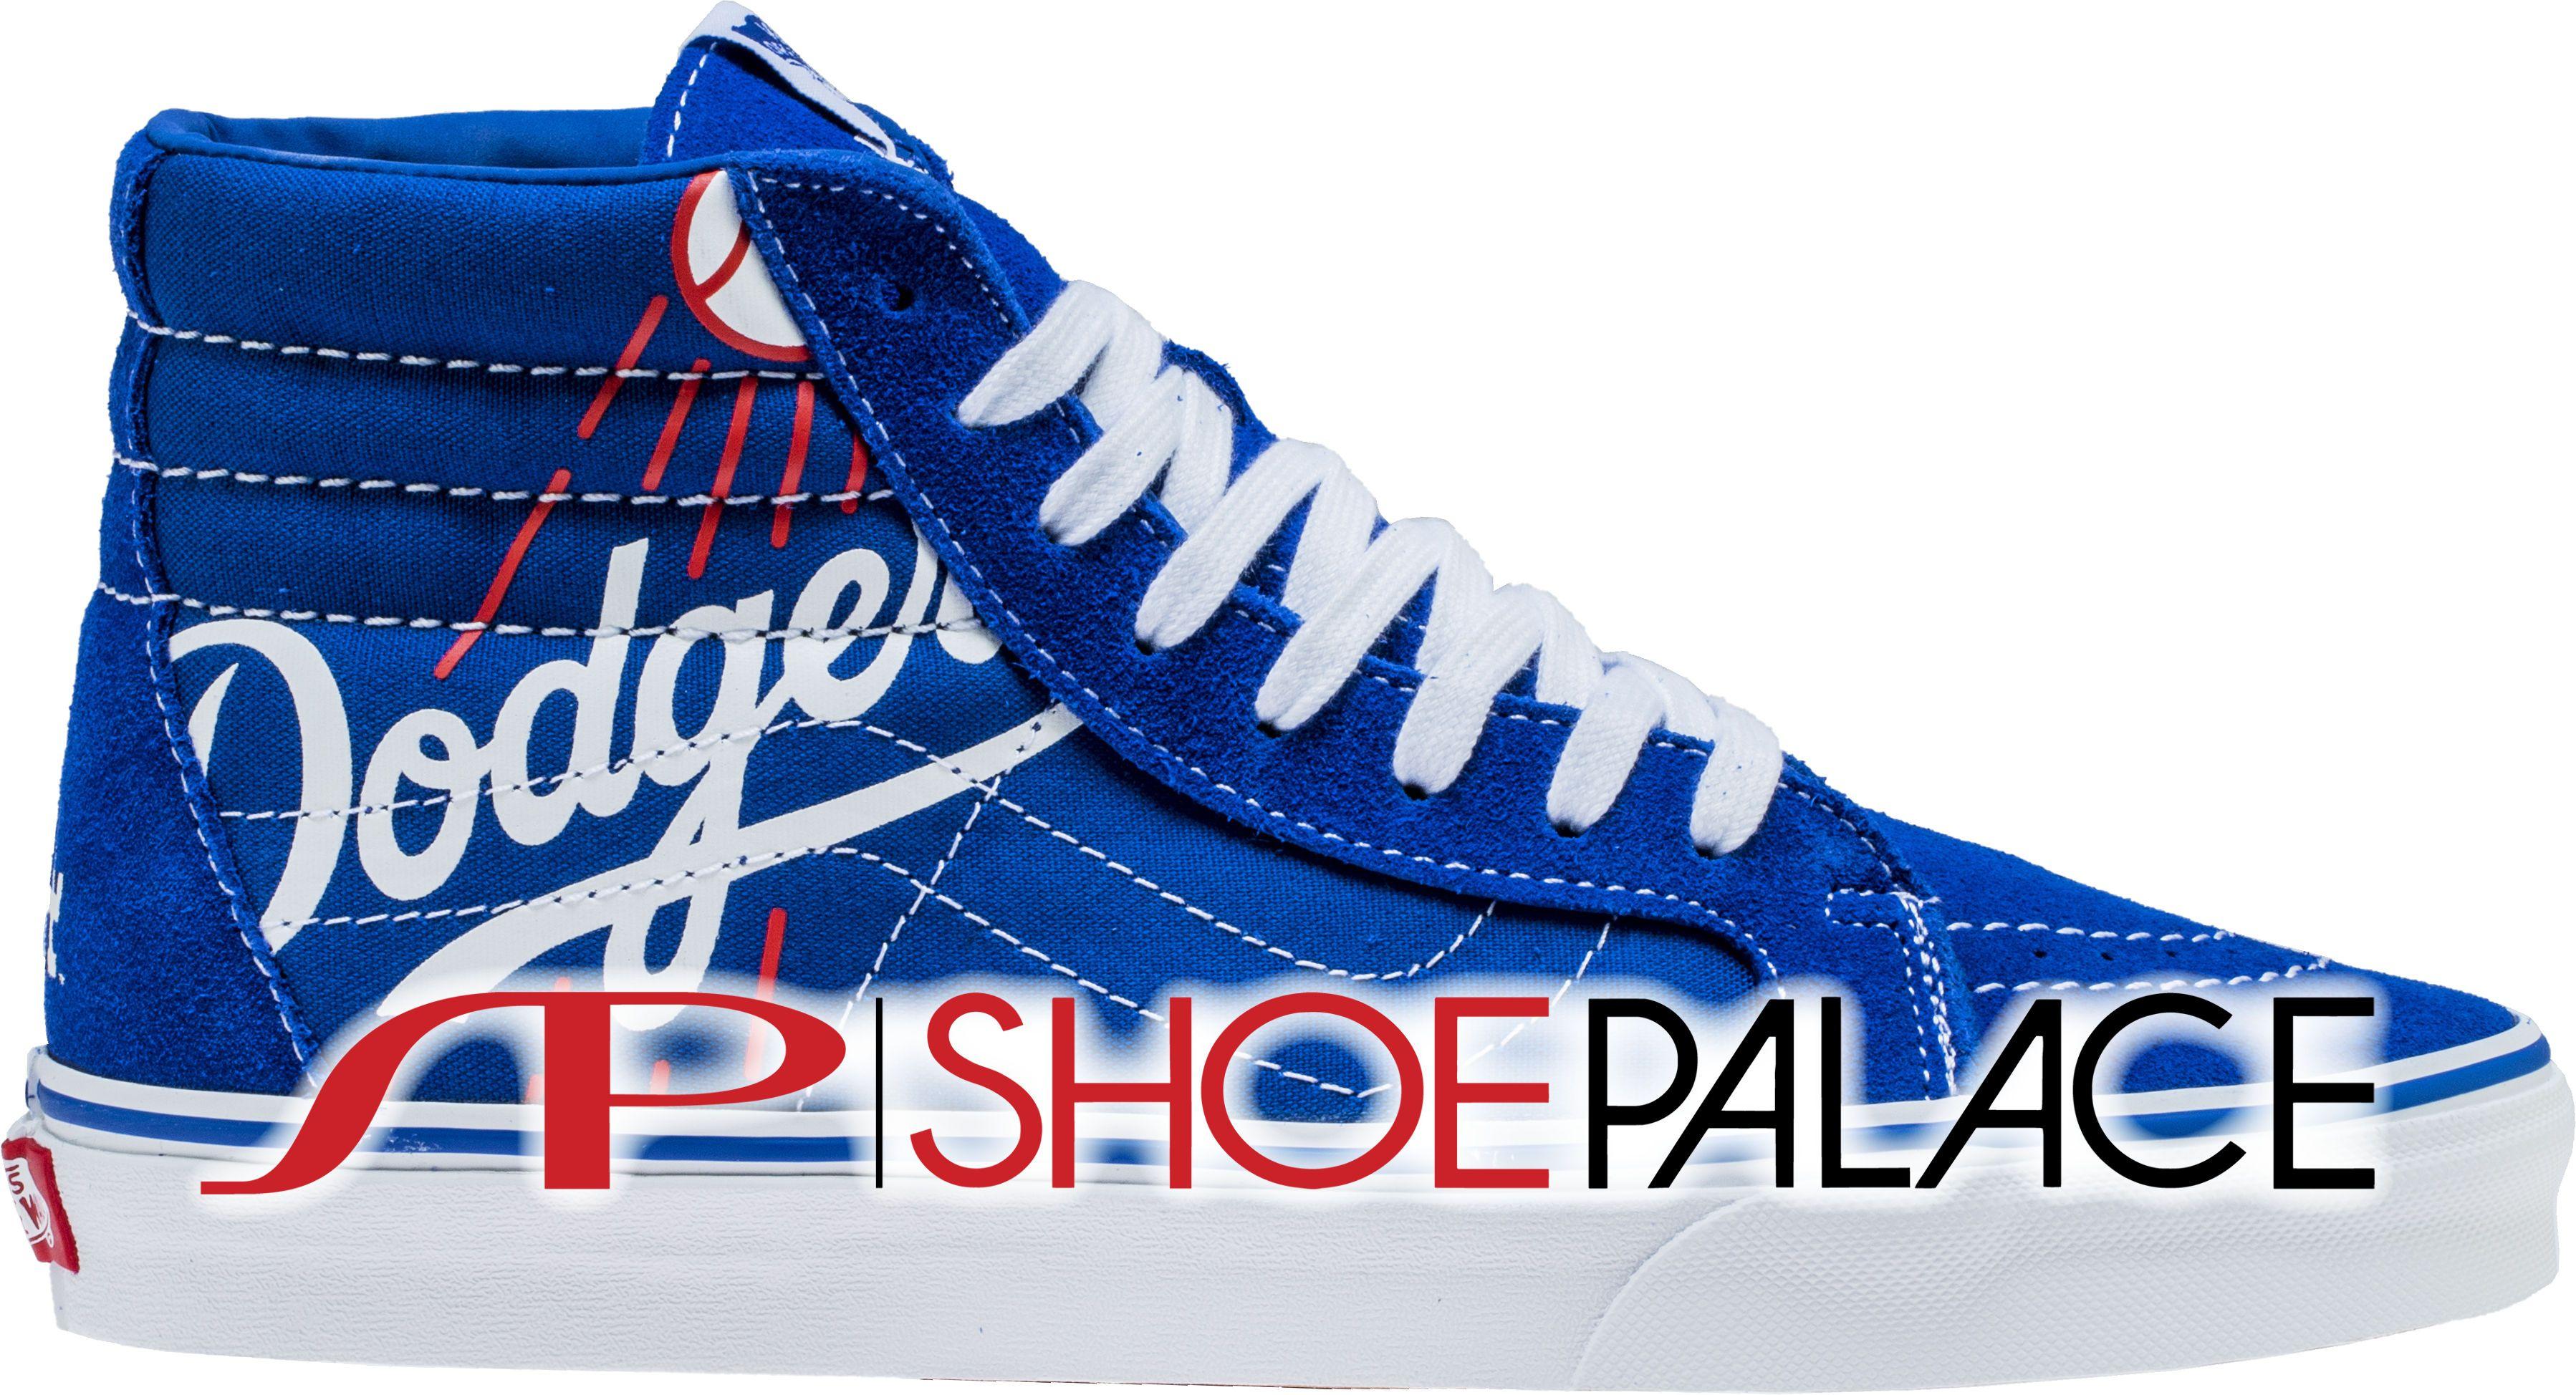 White and Blue Shoe Brand Logo - Vans XSBRT1 Dodgers MLB SK8 HI Reissue Mens Skateboarding Shoe